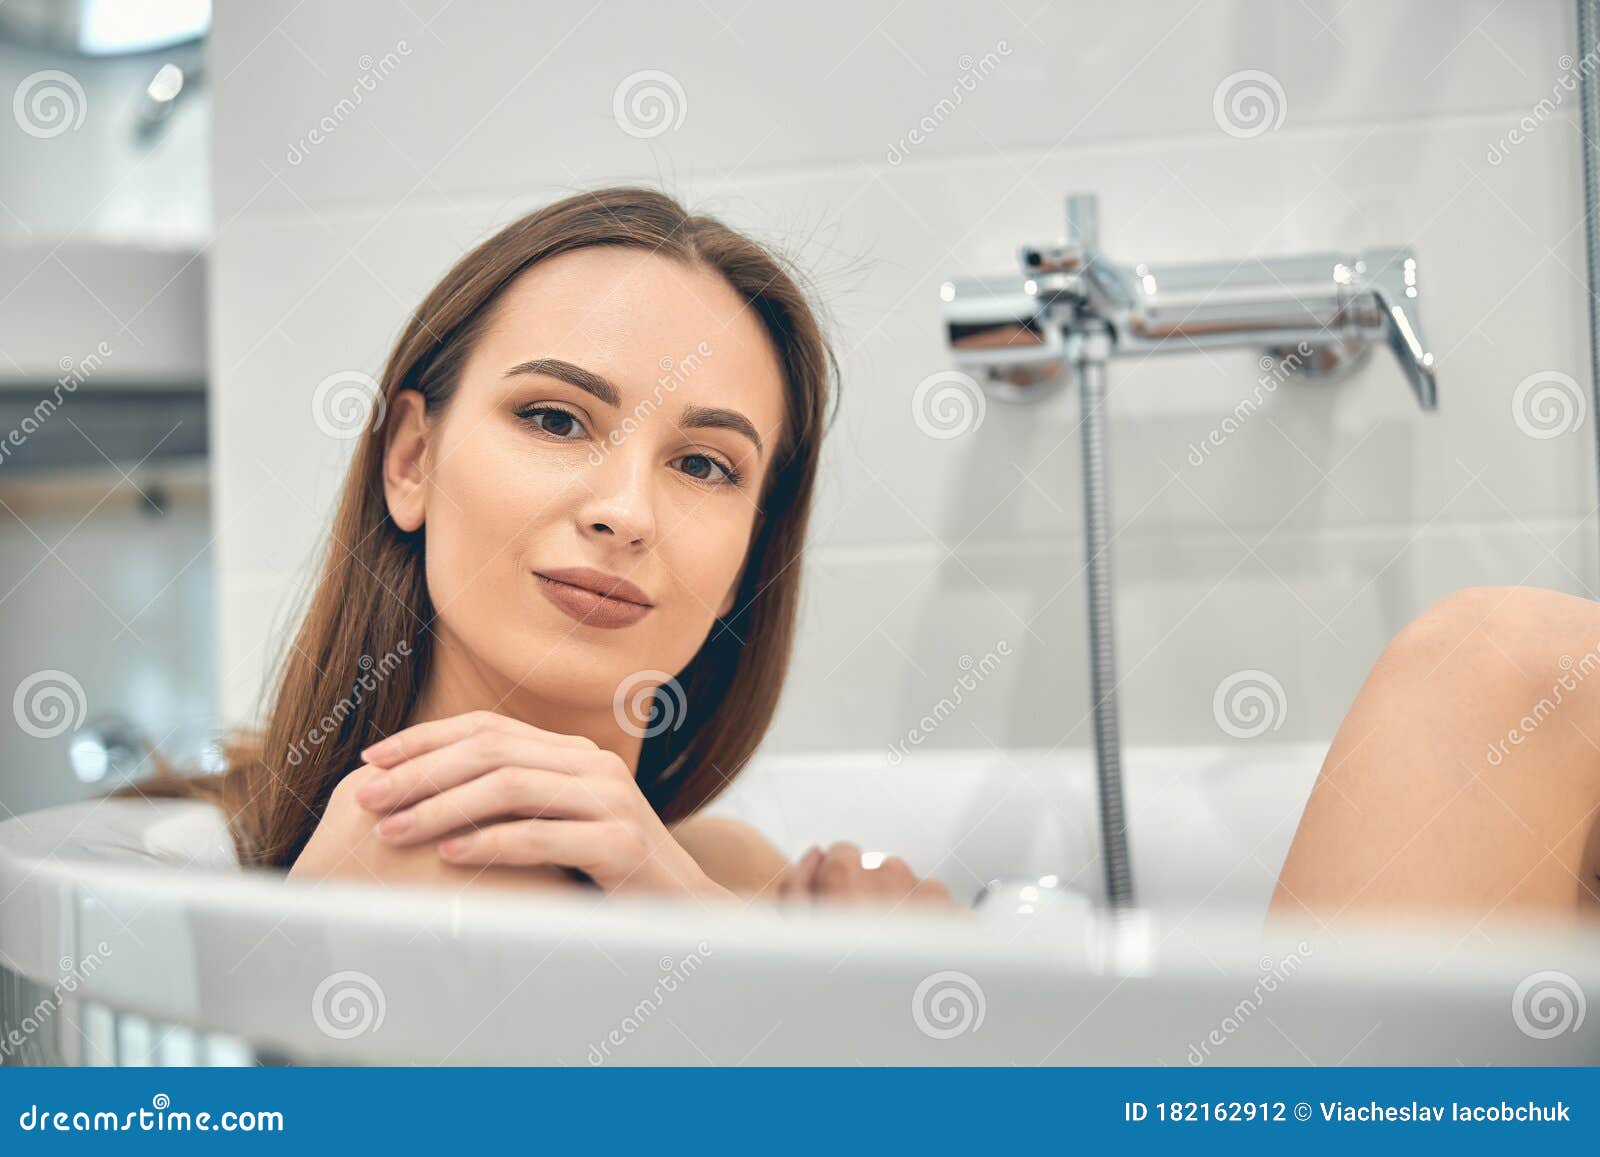 洗浴的美女图片素材-编号27385226-图行天下